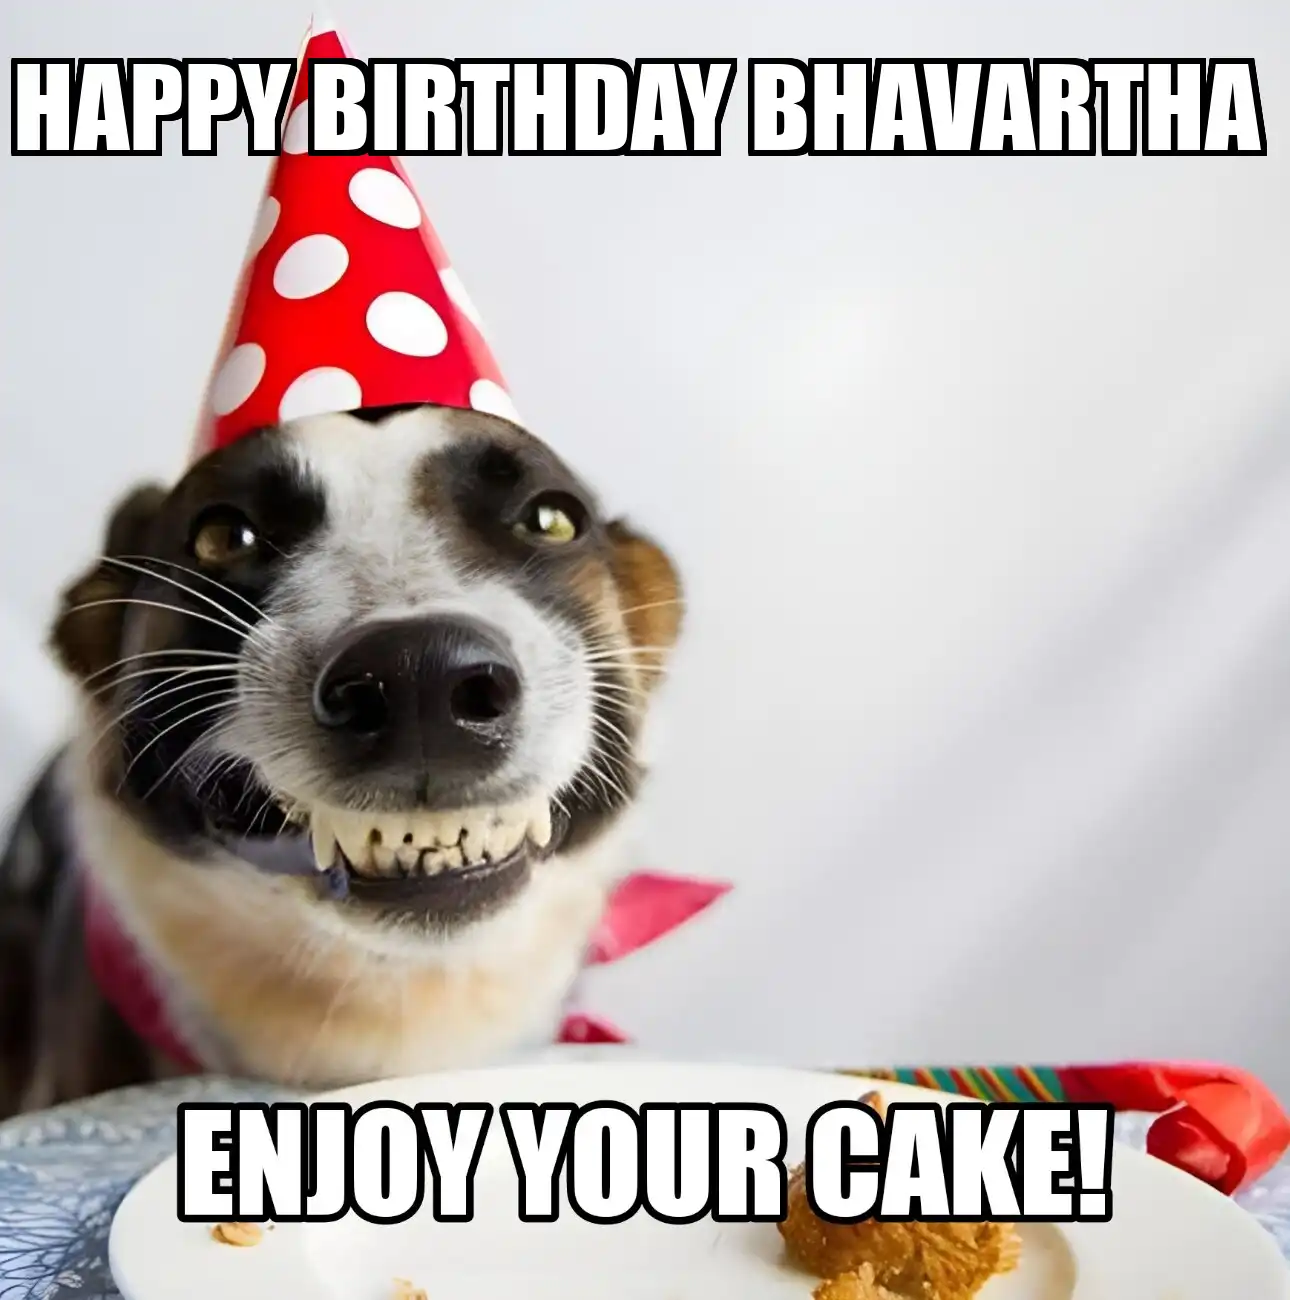 Happy Birthday Bhavartha Enjoy Your Cake Dog Meme